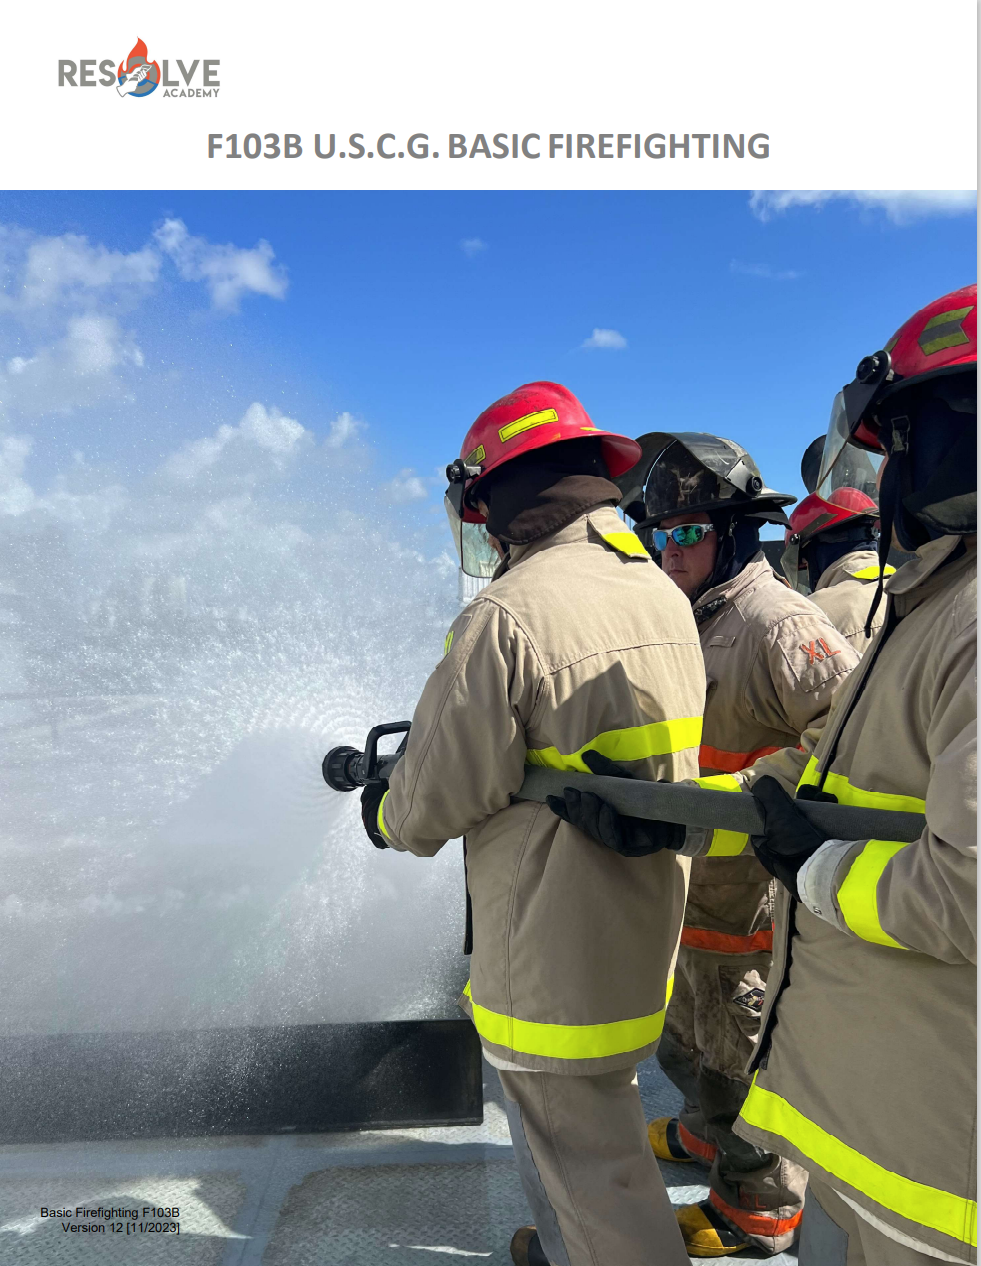 Basic Firefighting USCG